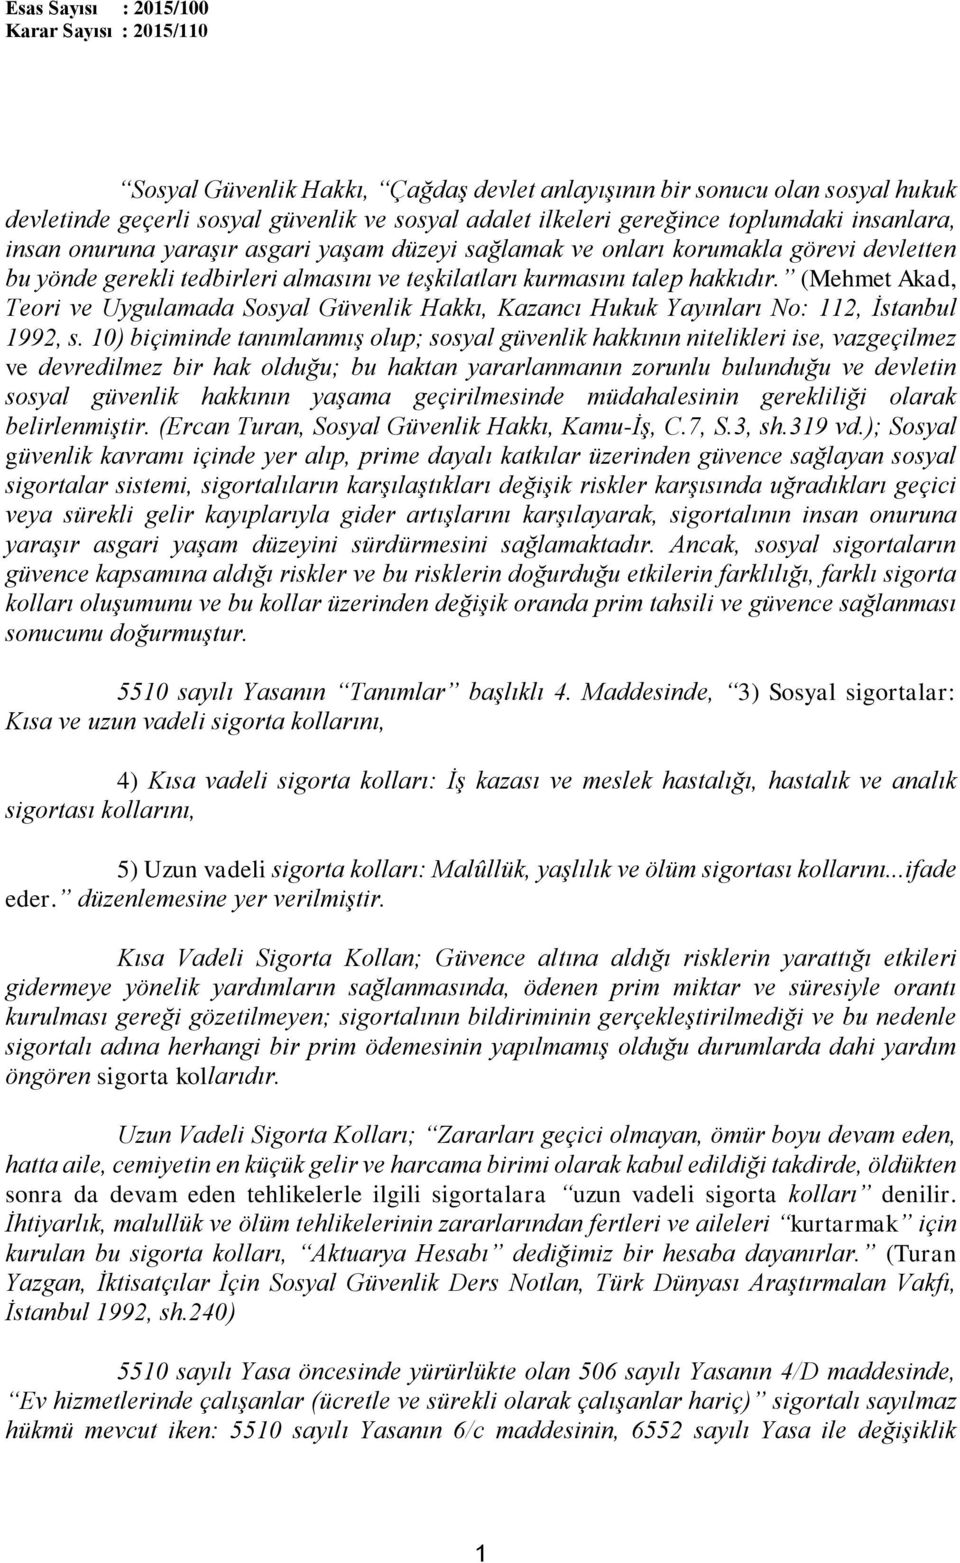 (Mehmet Akad, Teori ve Uygulamada Sosyal Güvenlik Hakkı, Kazancı Hukuk Yayınları No: 112, İstanbul 1992, s.